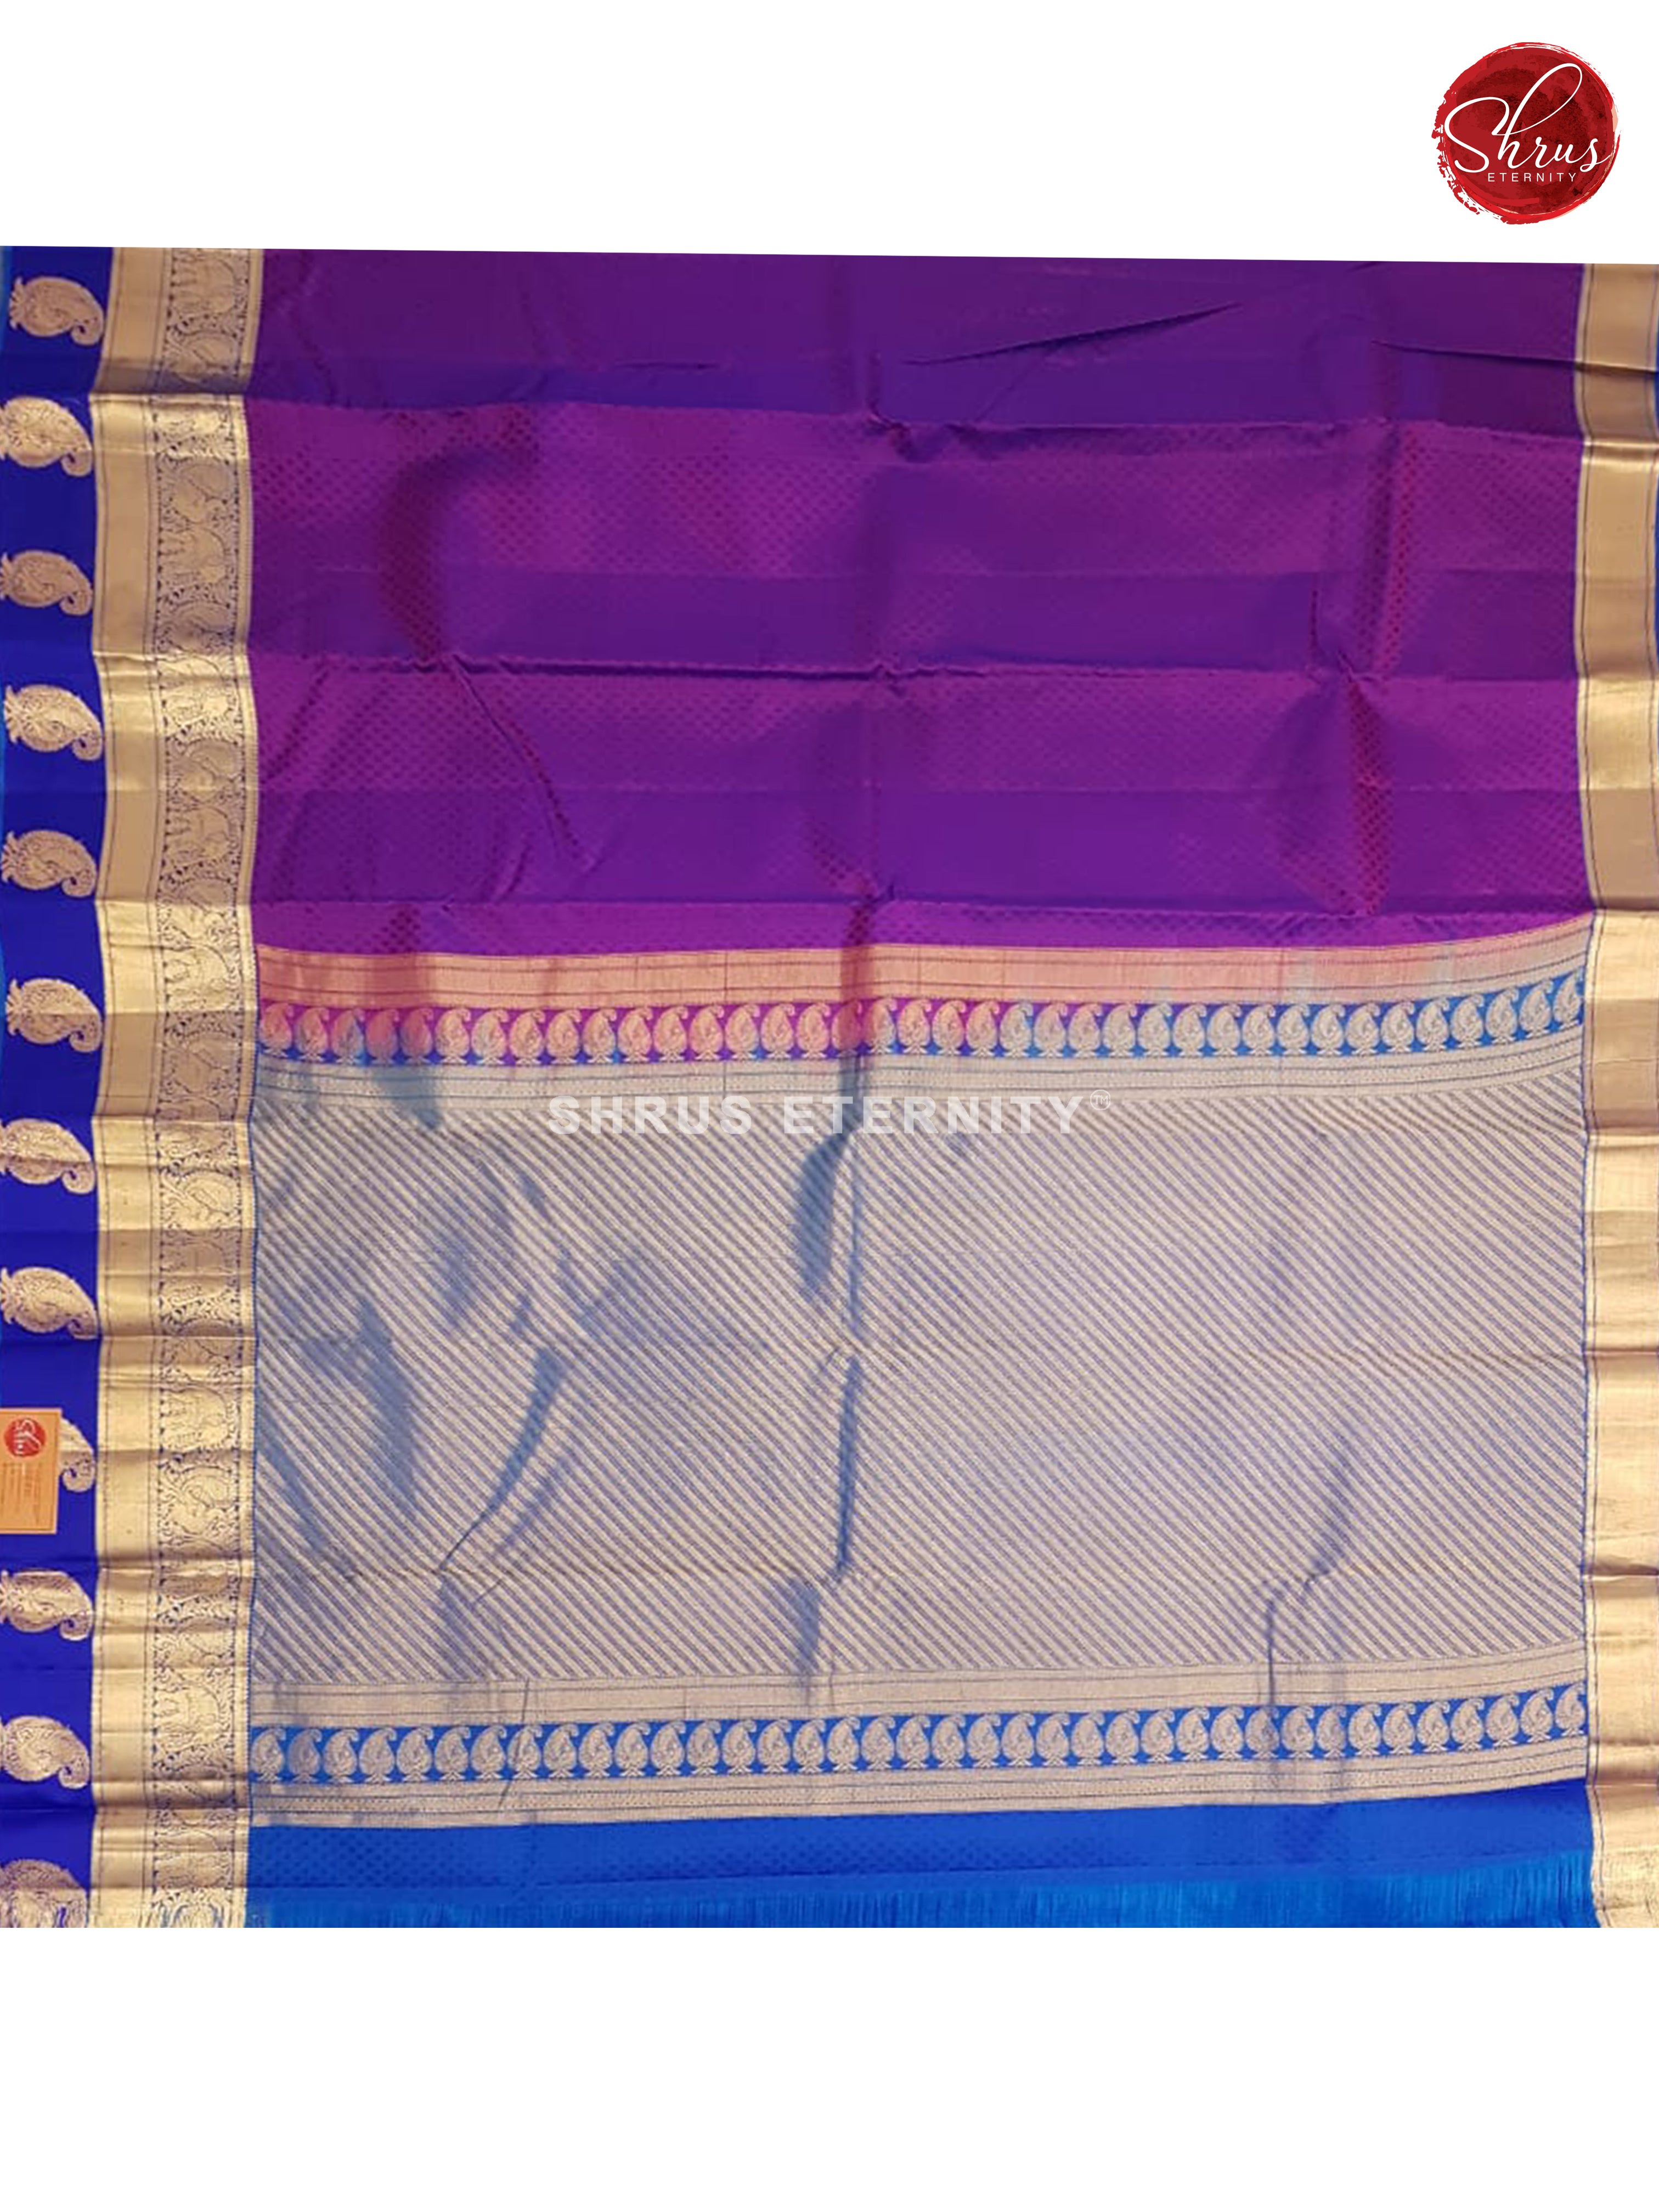 Purple & Blue - Kanchipuram Silk - Shop on ShrusEternity.com